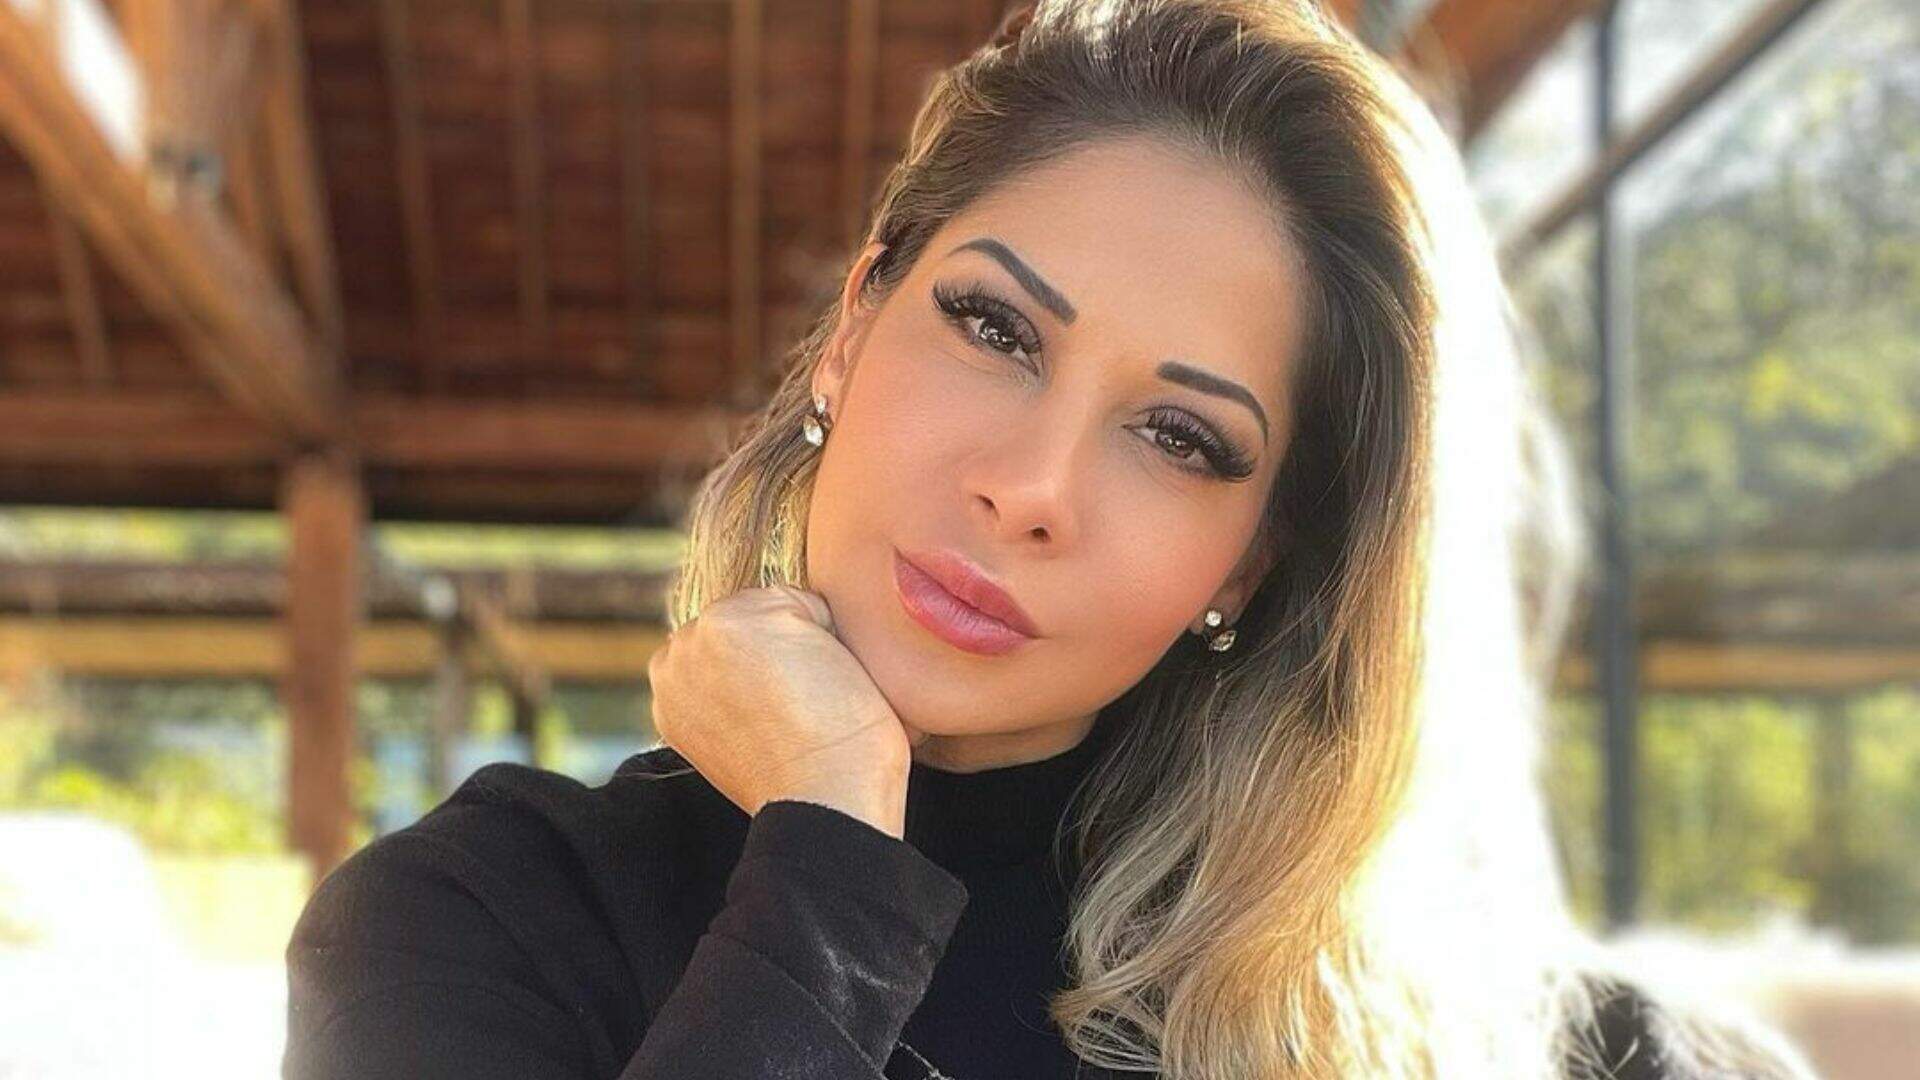 Maíra Cardi realiza procedimento cirúrgico nos olhos e alerta seguidores: “Nunca é algo simples” - Metropolitana FM